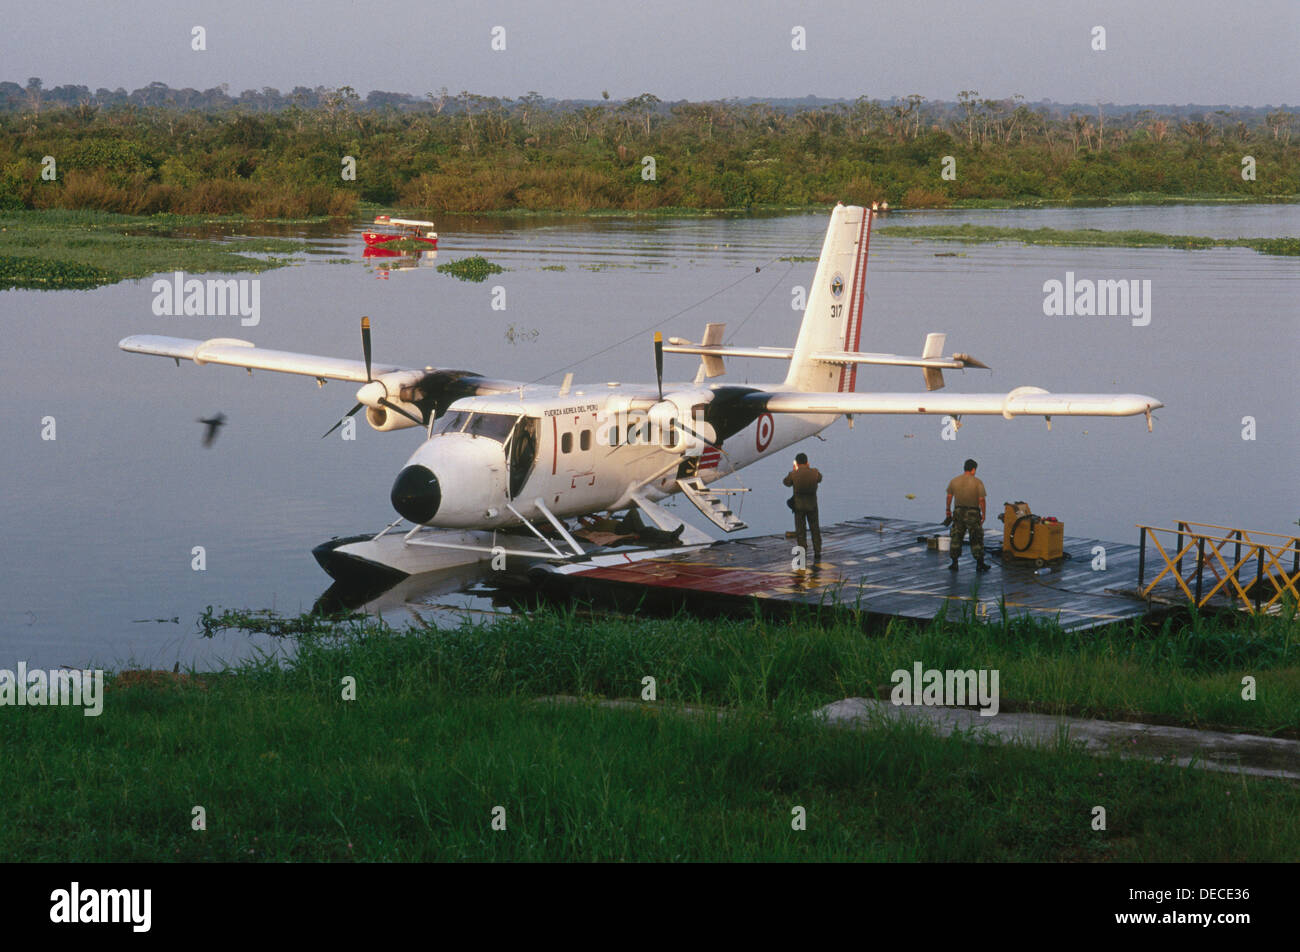 Avion qui va à des endroits isolés dans la jungle. Iquitos, fleuve Amazone. Pérou Banque D'Images